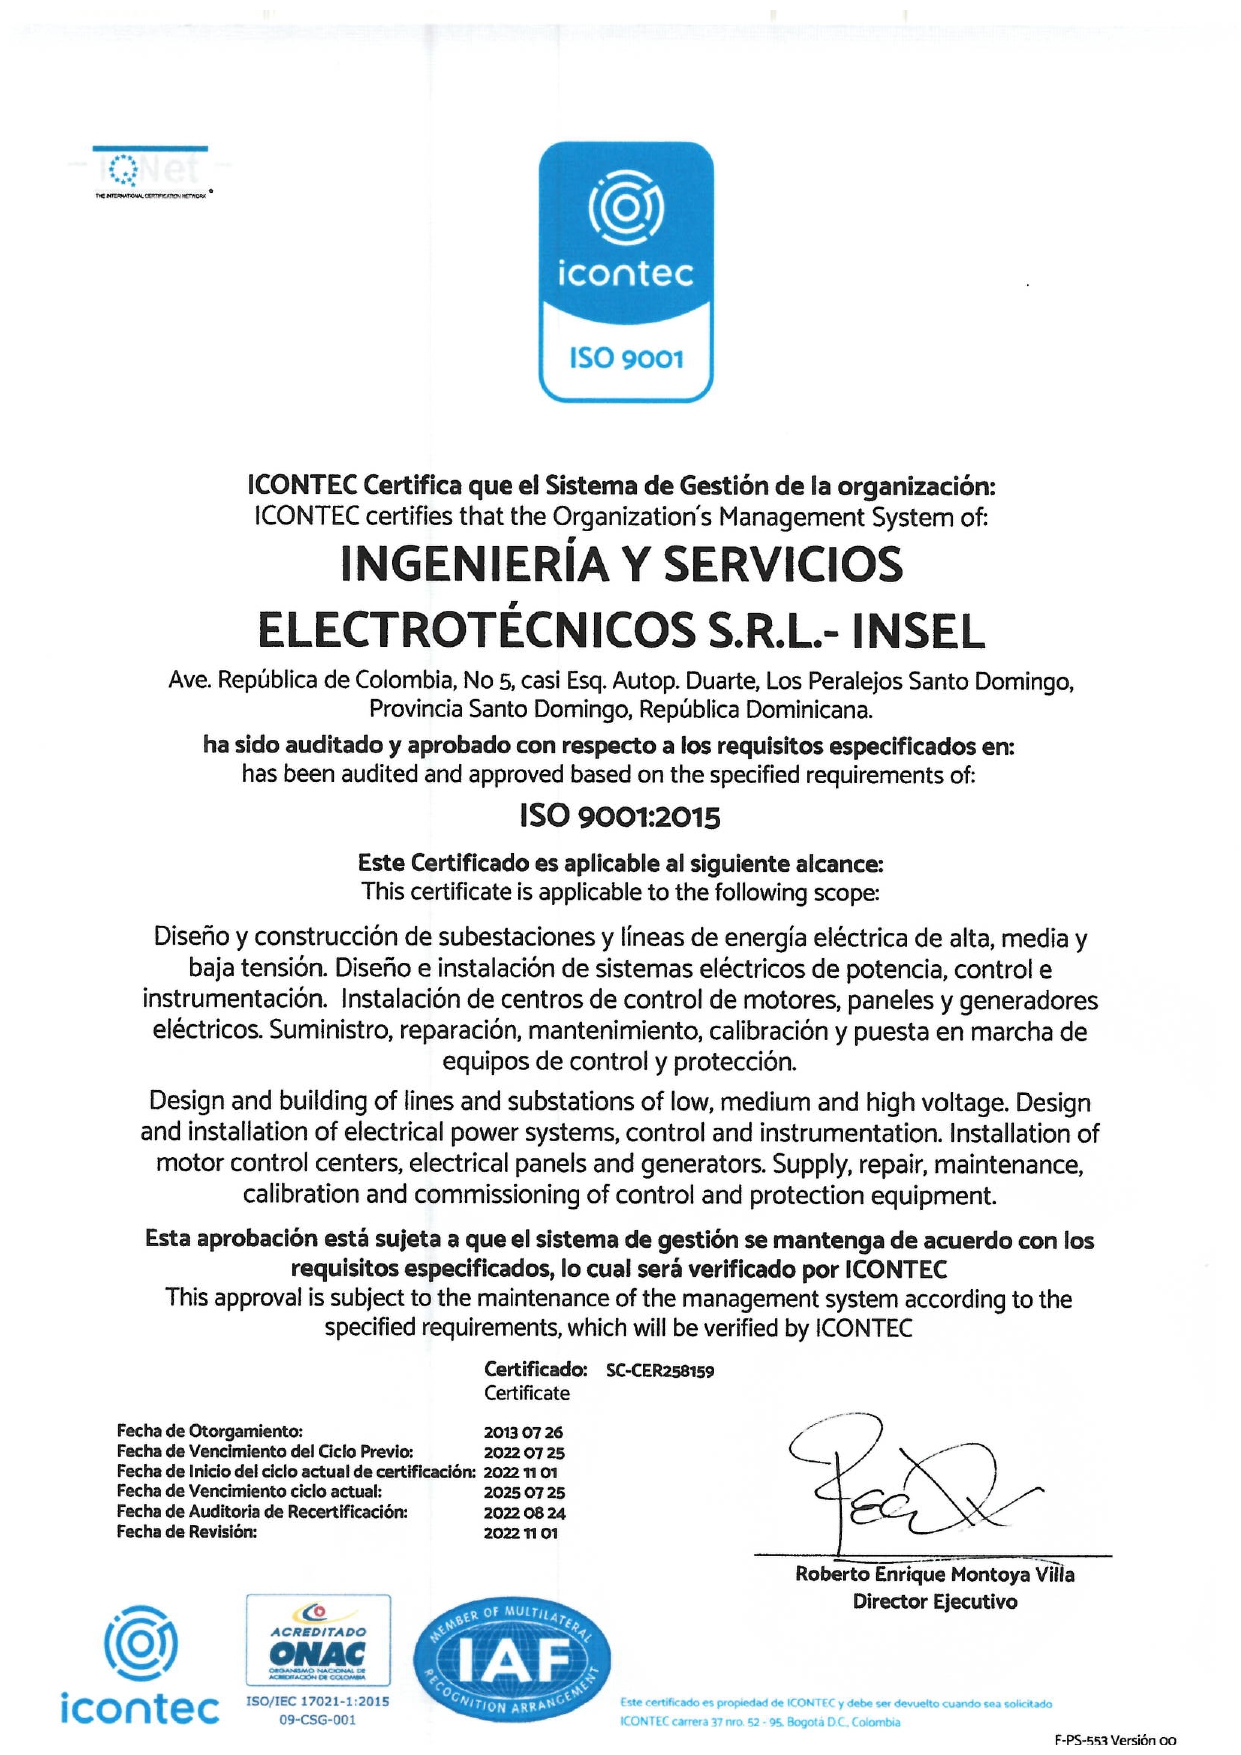 ISO 9001:2015 SISTEMA DE GESTIÓN DE CALIDAD